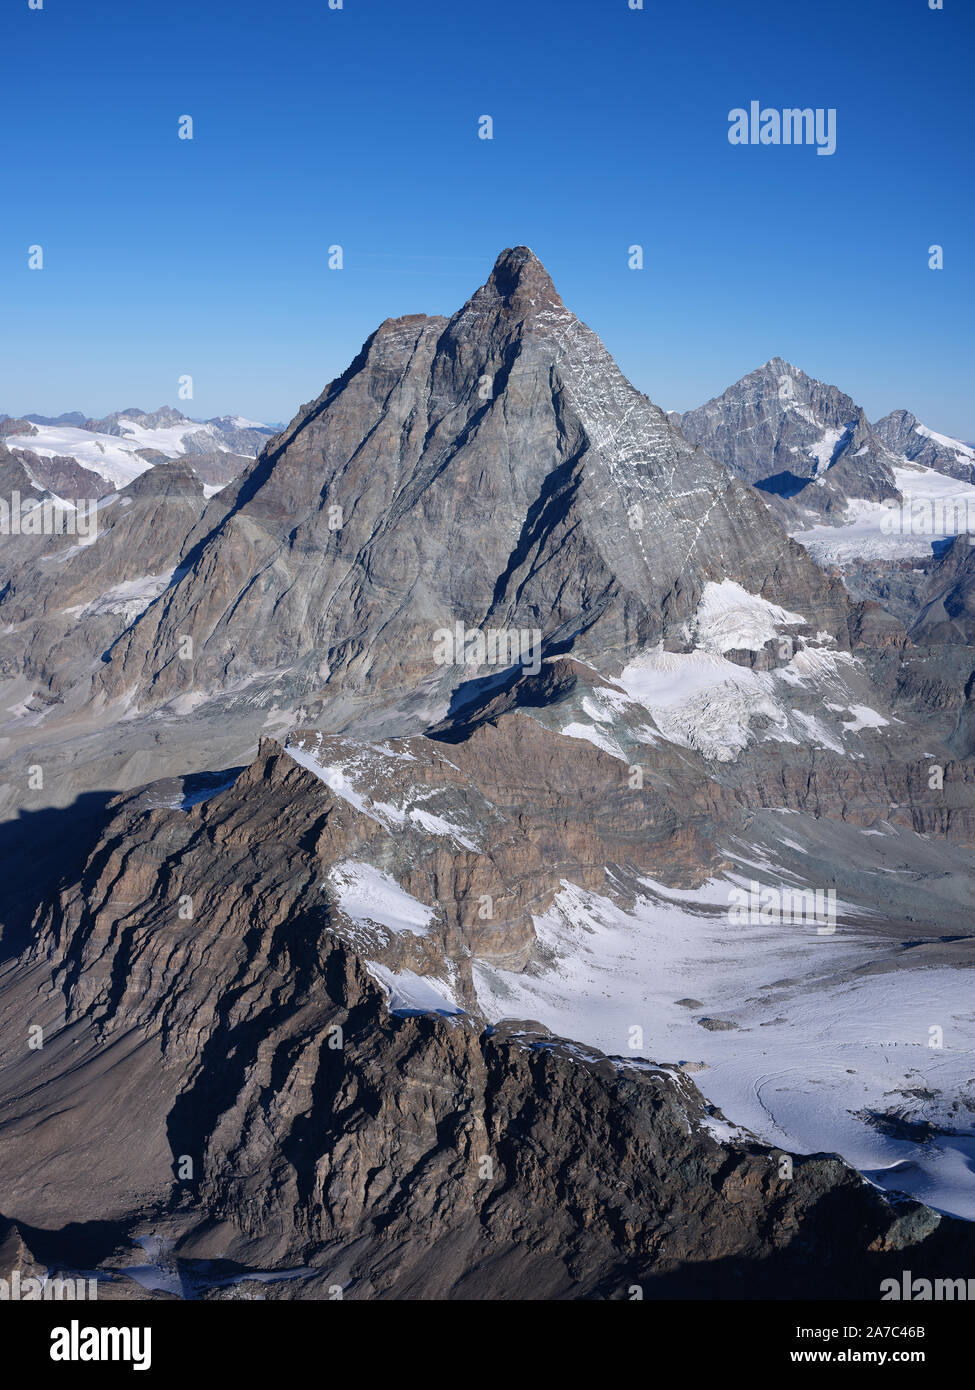 VUE AÉRIENNE de l'est. 4478 m de haut Cervino/Cervin. Vallée d'Aoste, italie (à gauche de la crête) et canton du Valais, Suisse (à droite de la crête). Banque D'Images